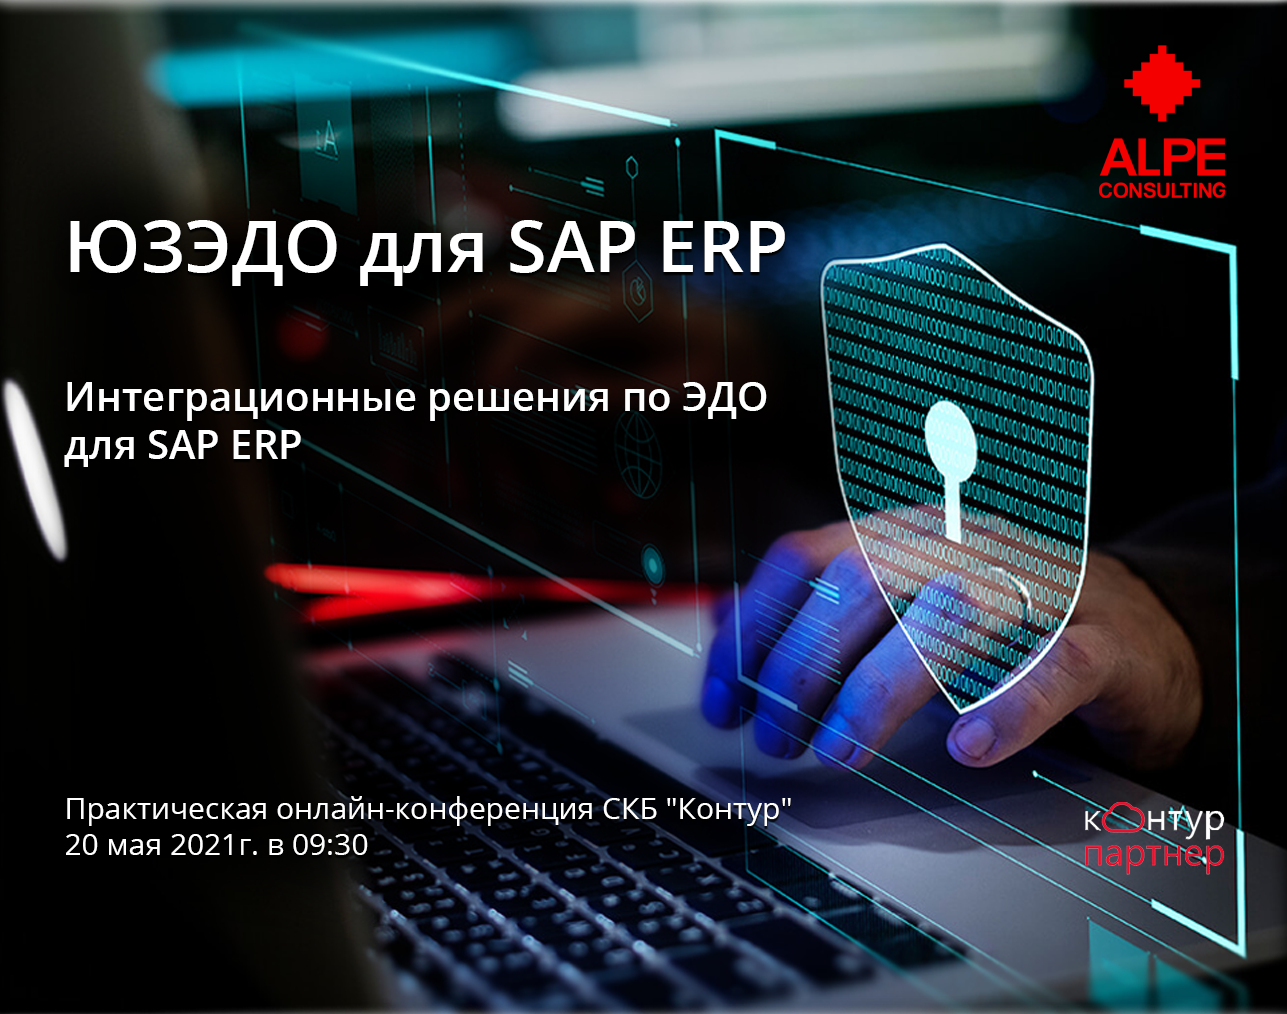 20.05.2021 Онлайн конференция по интеграционным решениям ЭДО  для SAP ERP